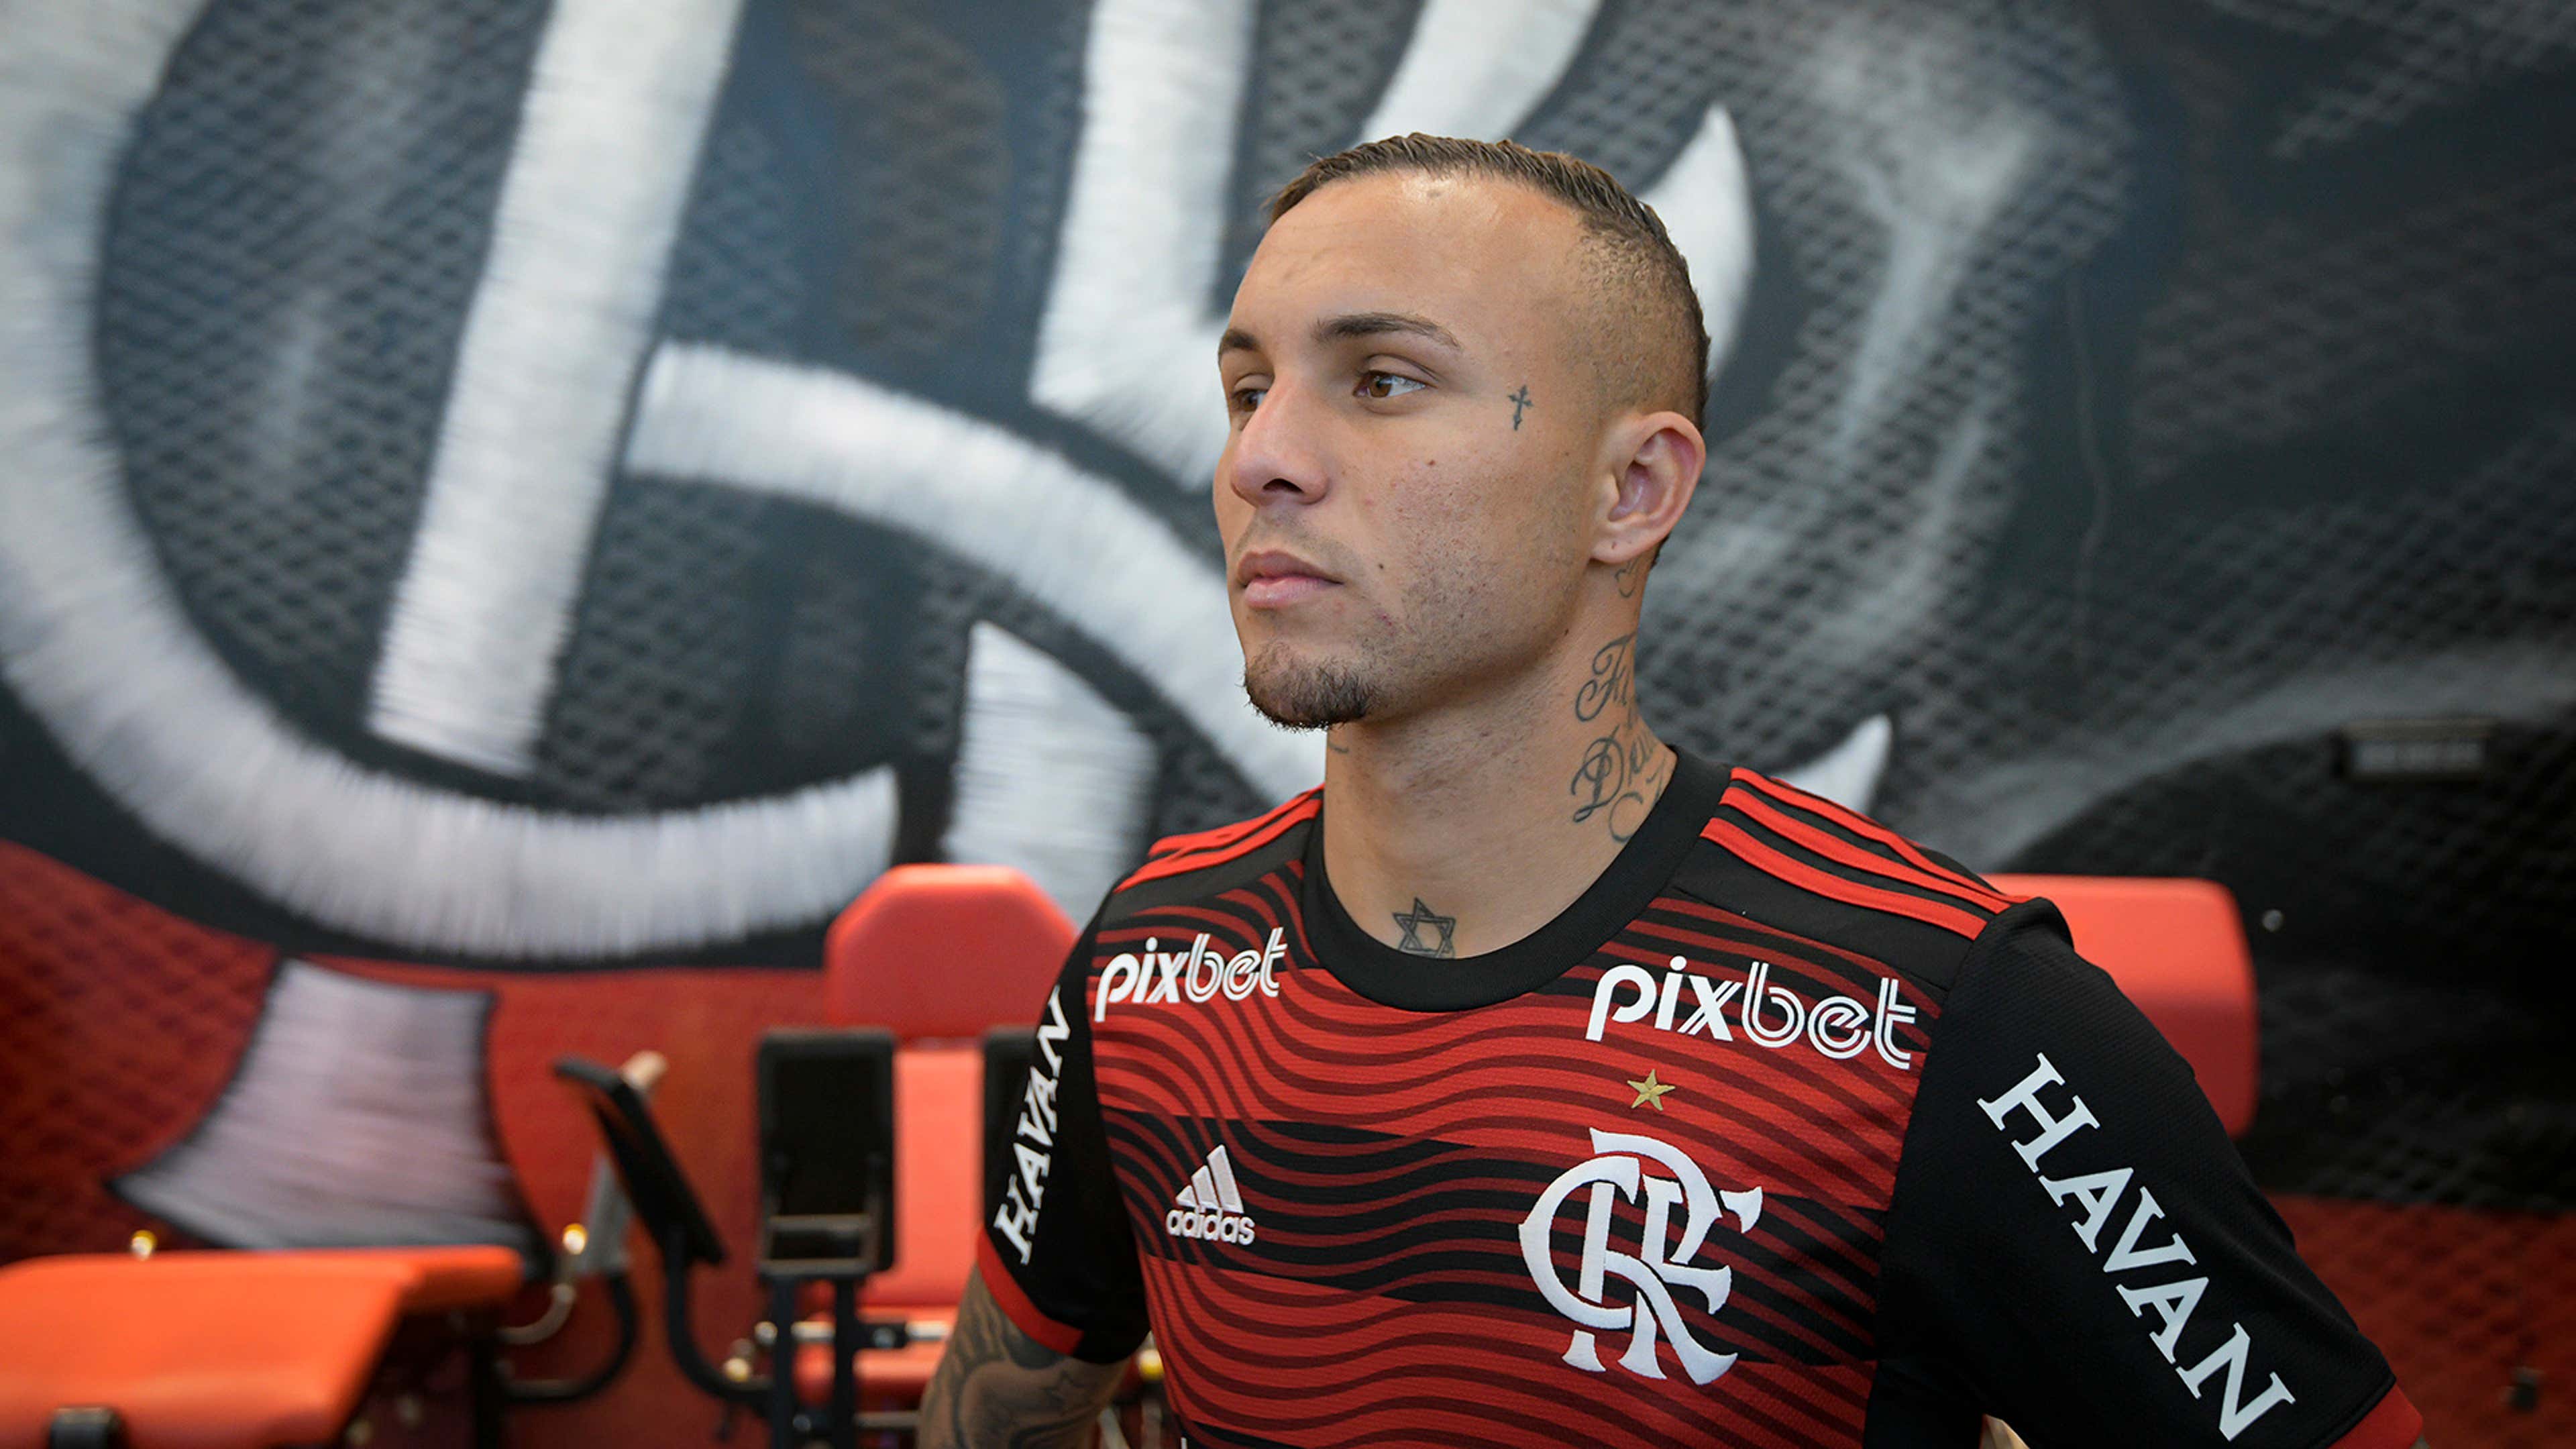 Contratações do Flamengo: quem já chegou e quem pode chegar até o